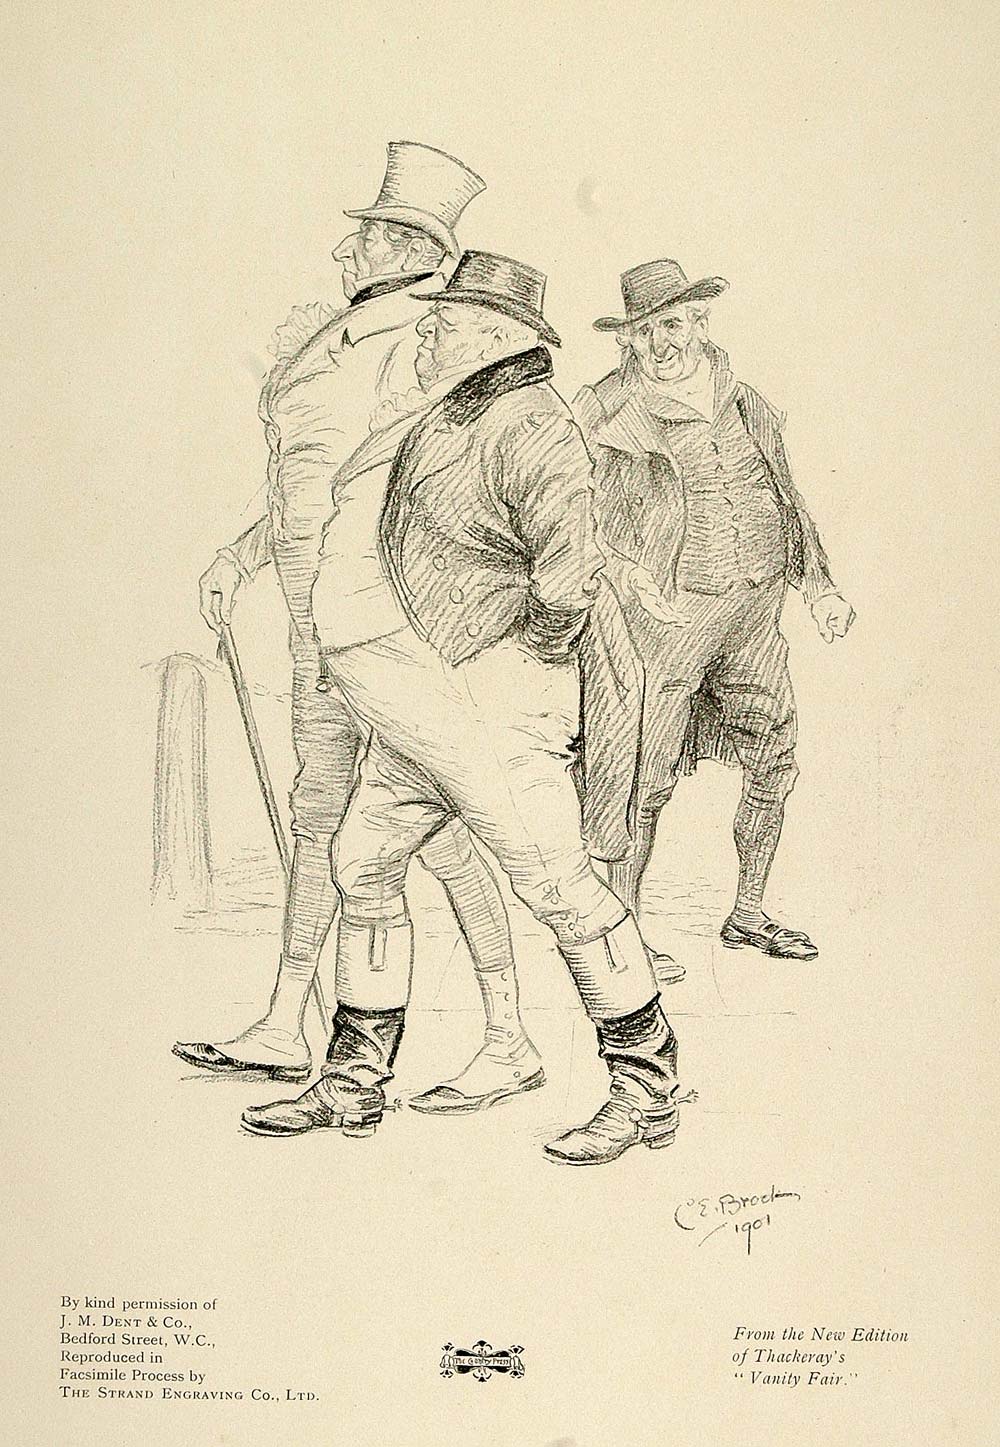 1901 Print Illustration Gentlemen Vanity Fair Thackeray - ORIGINAL PNR4